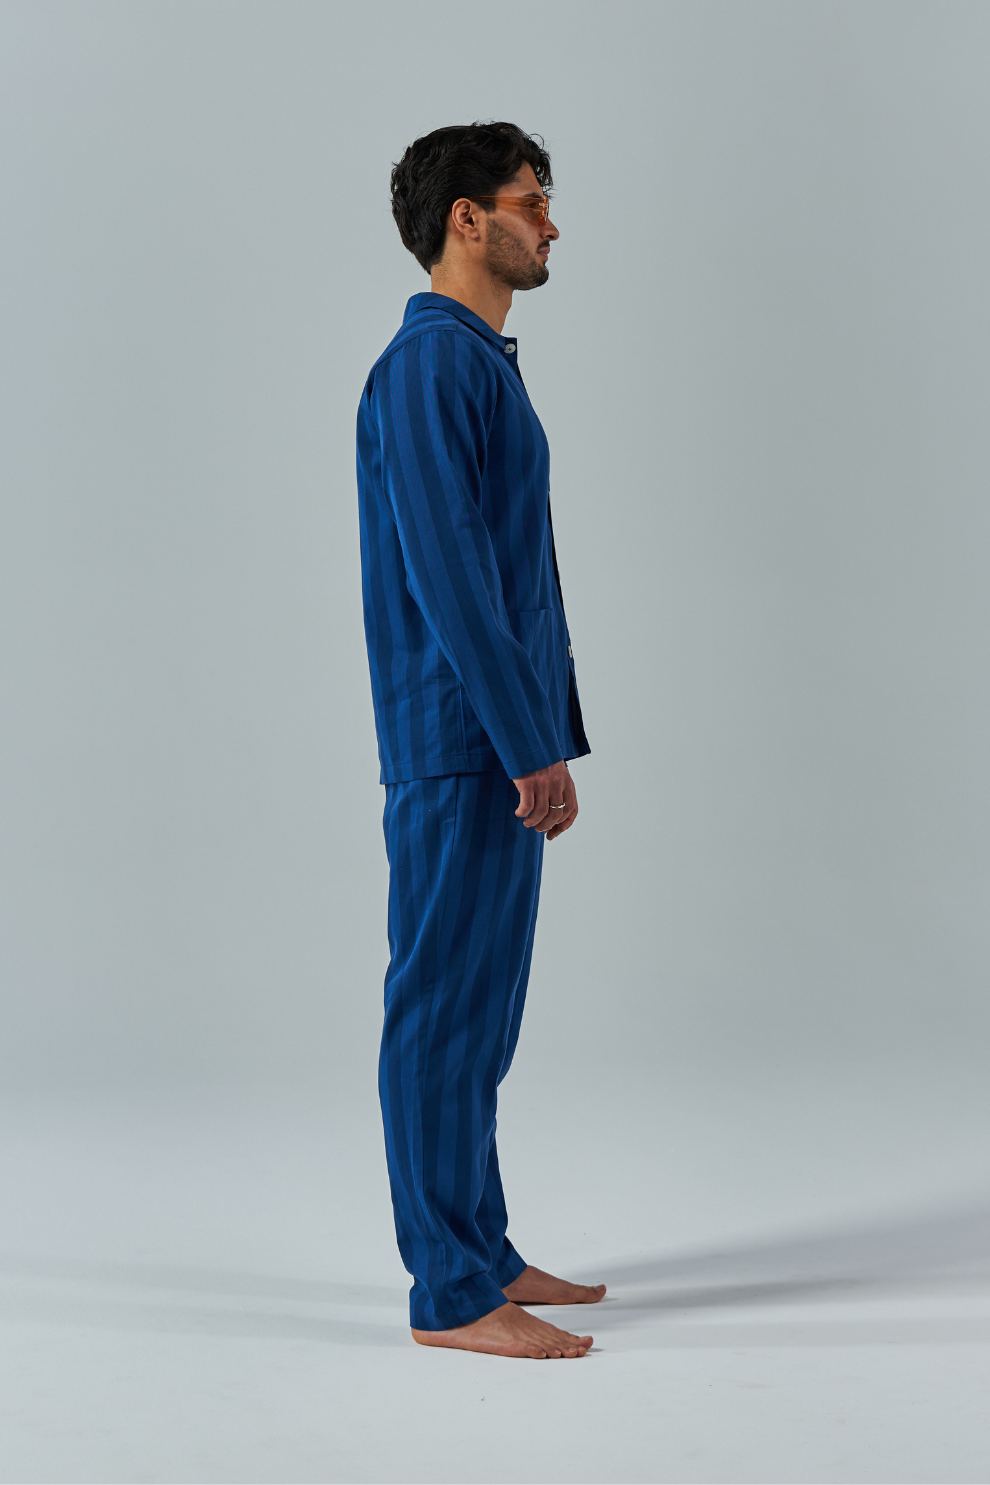 Nufferton | Pyjamas for Men & Women Online | Pyjama Sets | Loungewear ...